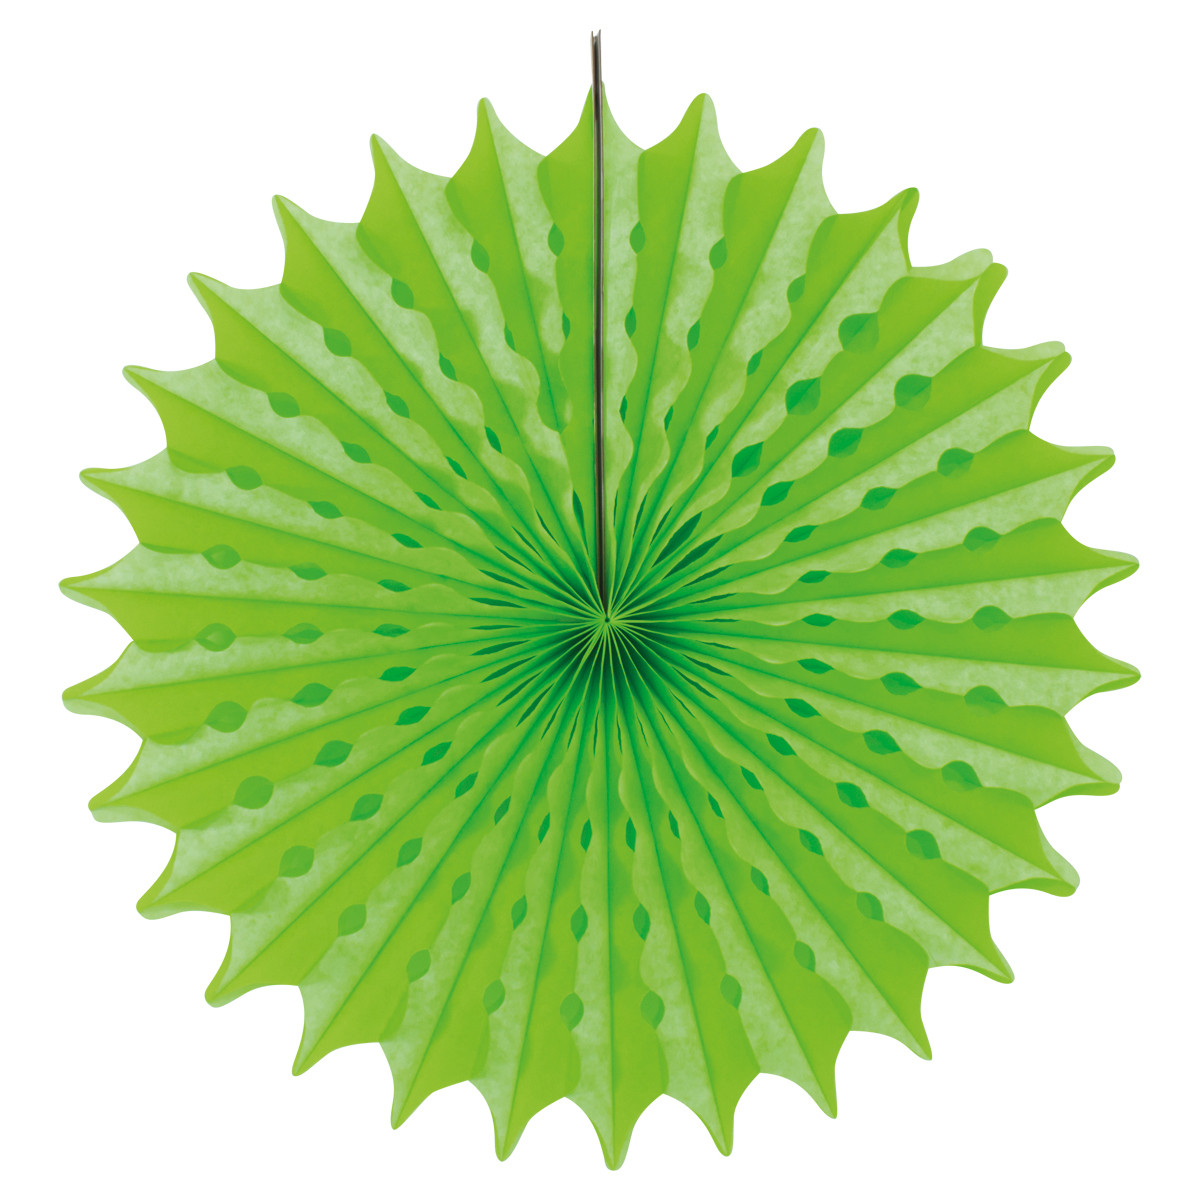 Honeycomb Waaier Neon Groen - 45cm